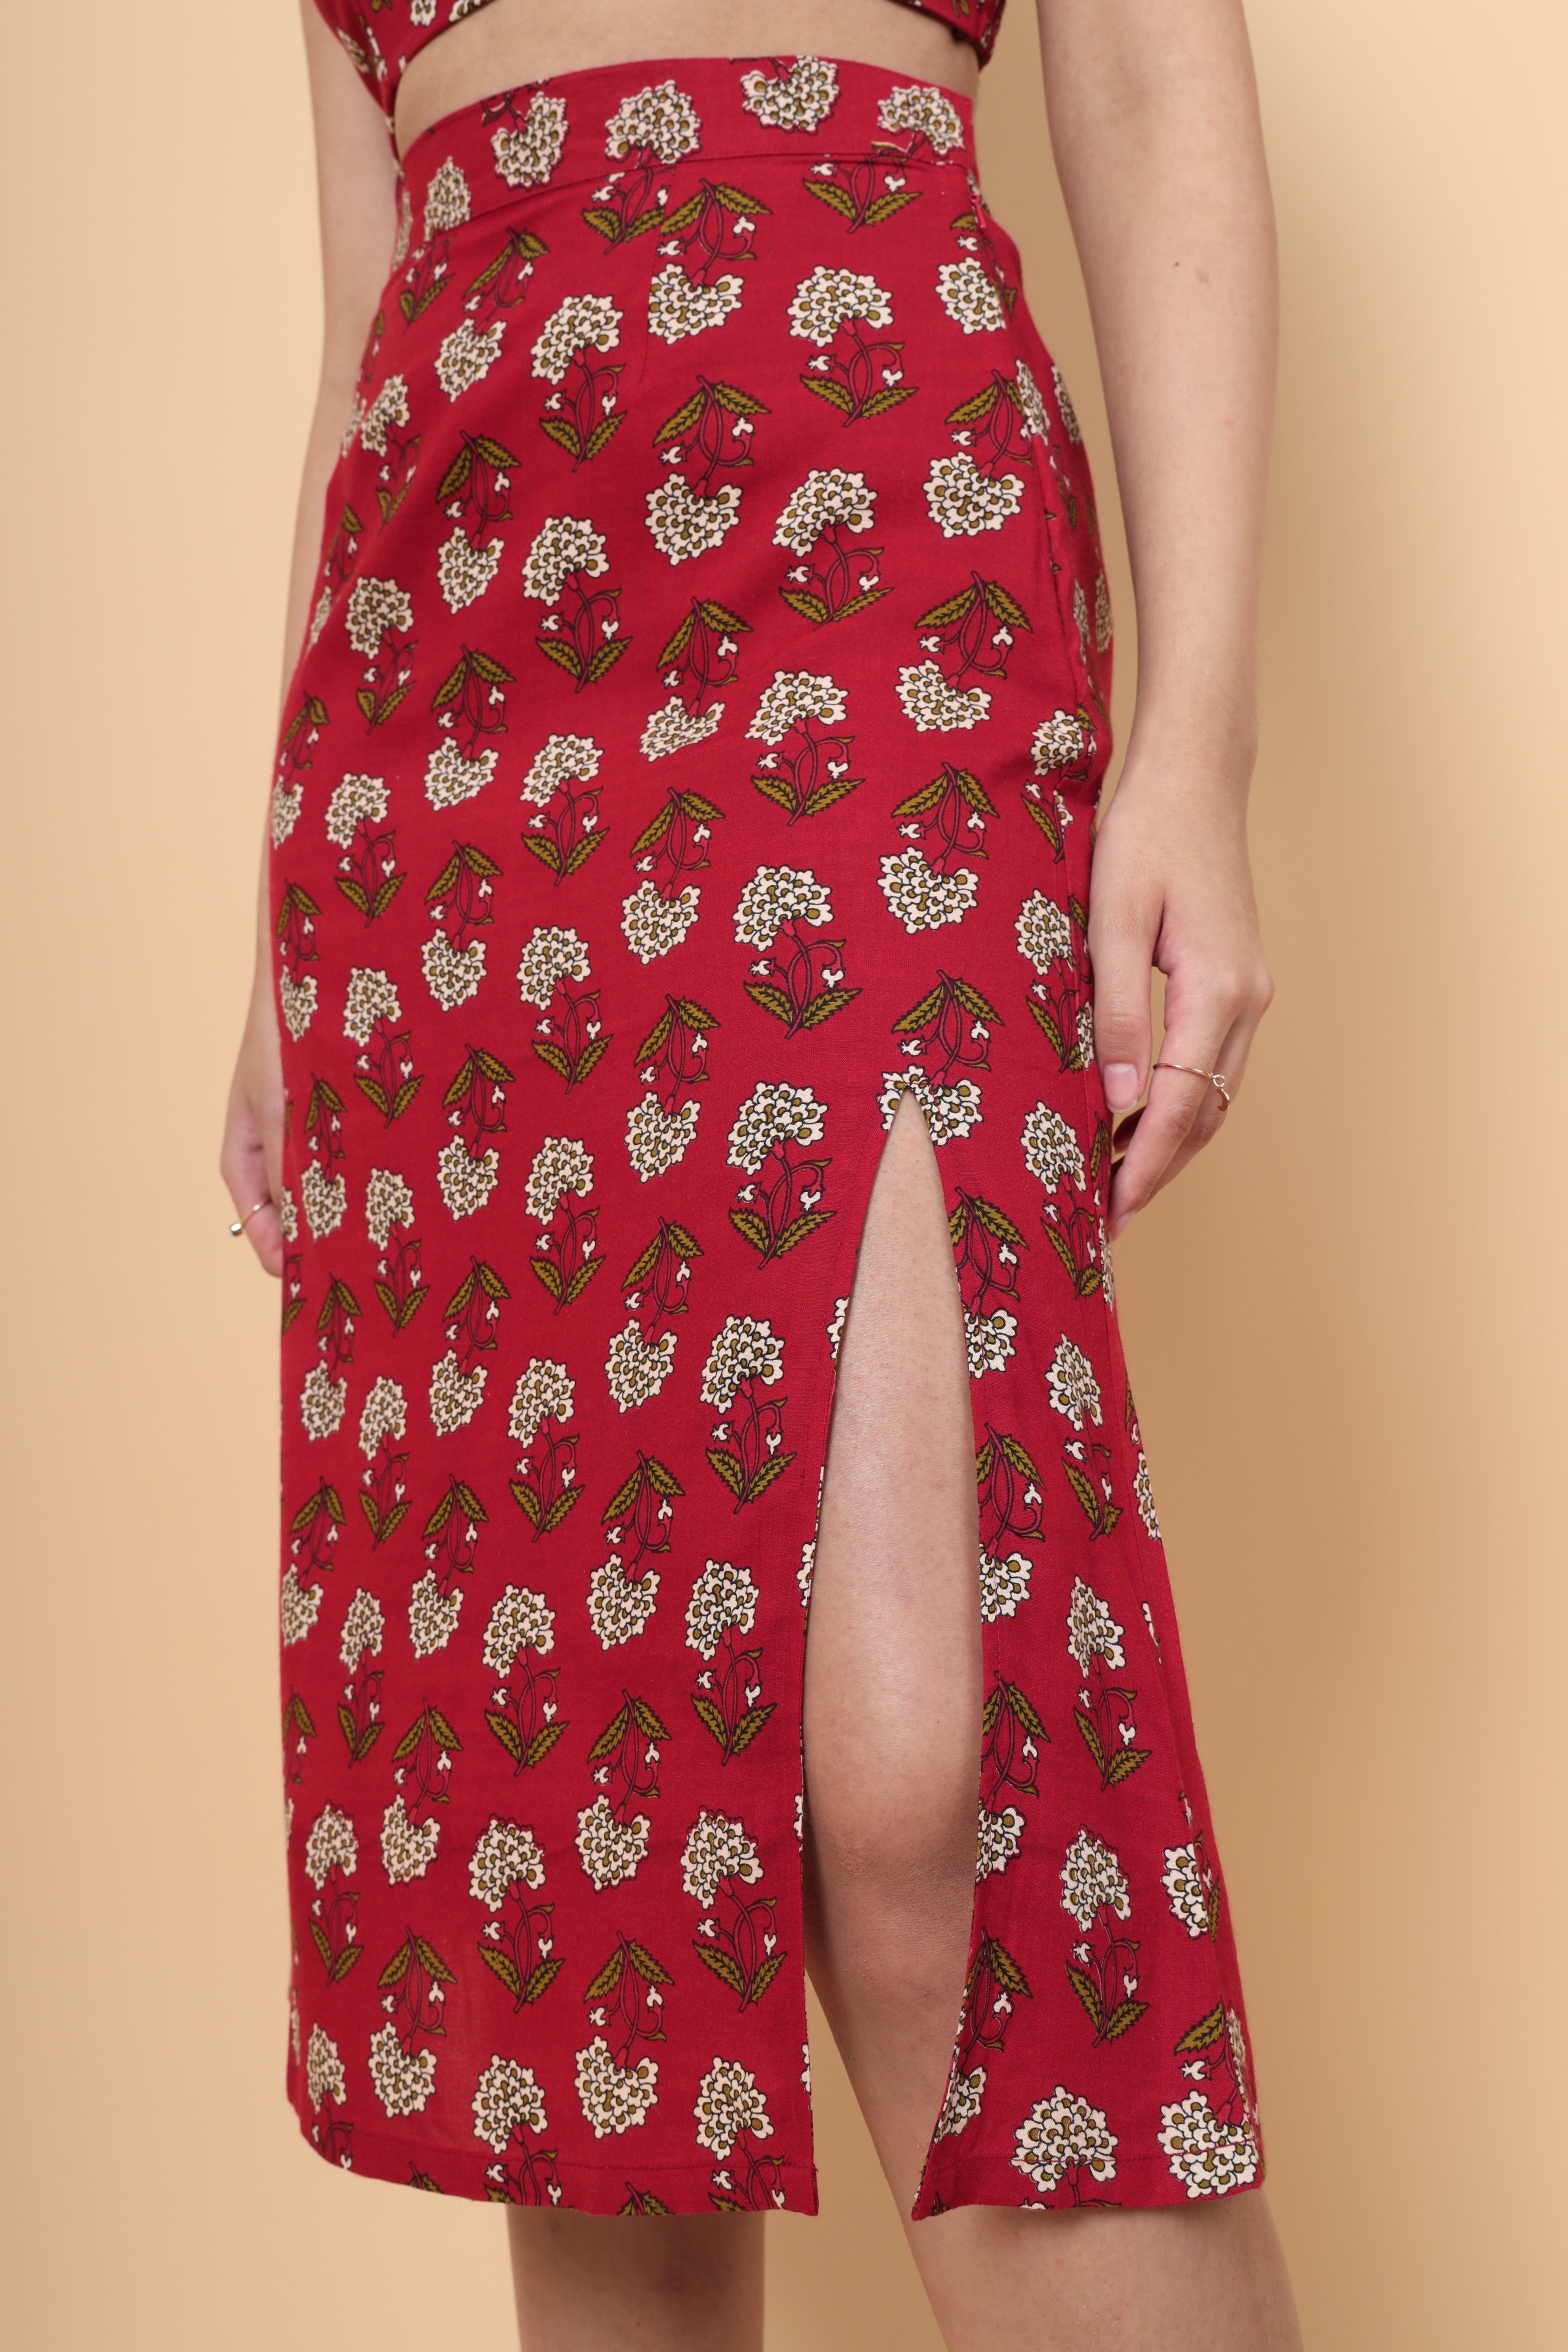 Rose Garden Skirt